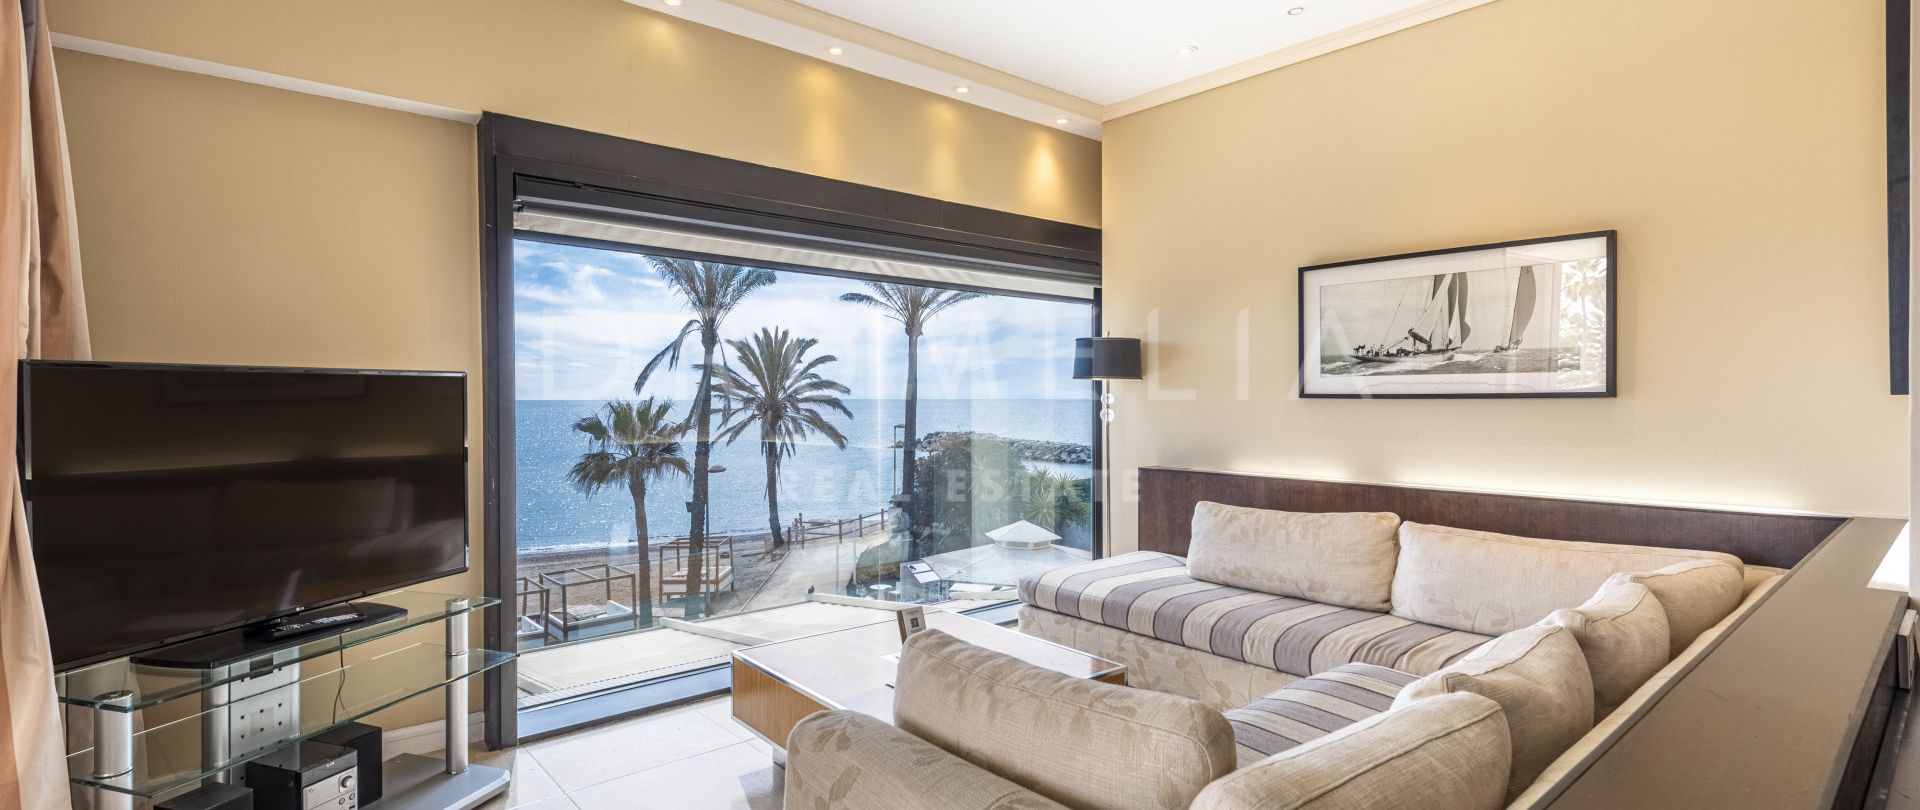 Luxuriöse Strandwohnung mit atemberaubendem Meerblick in Guadalpin Banus, Marbella